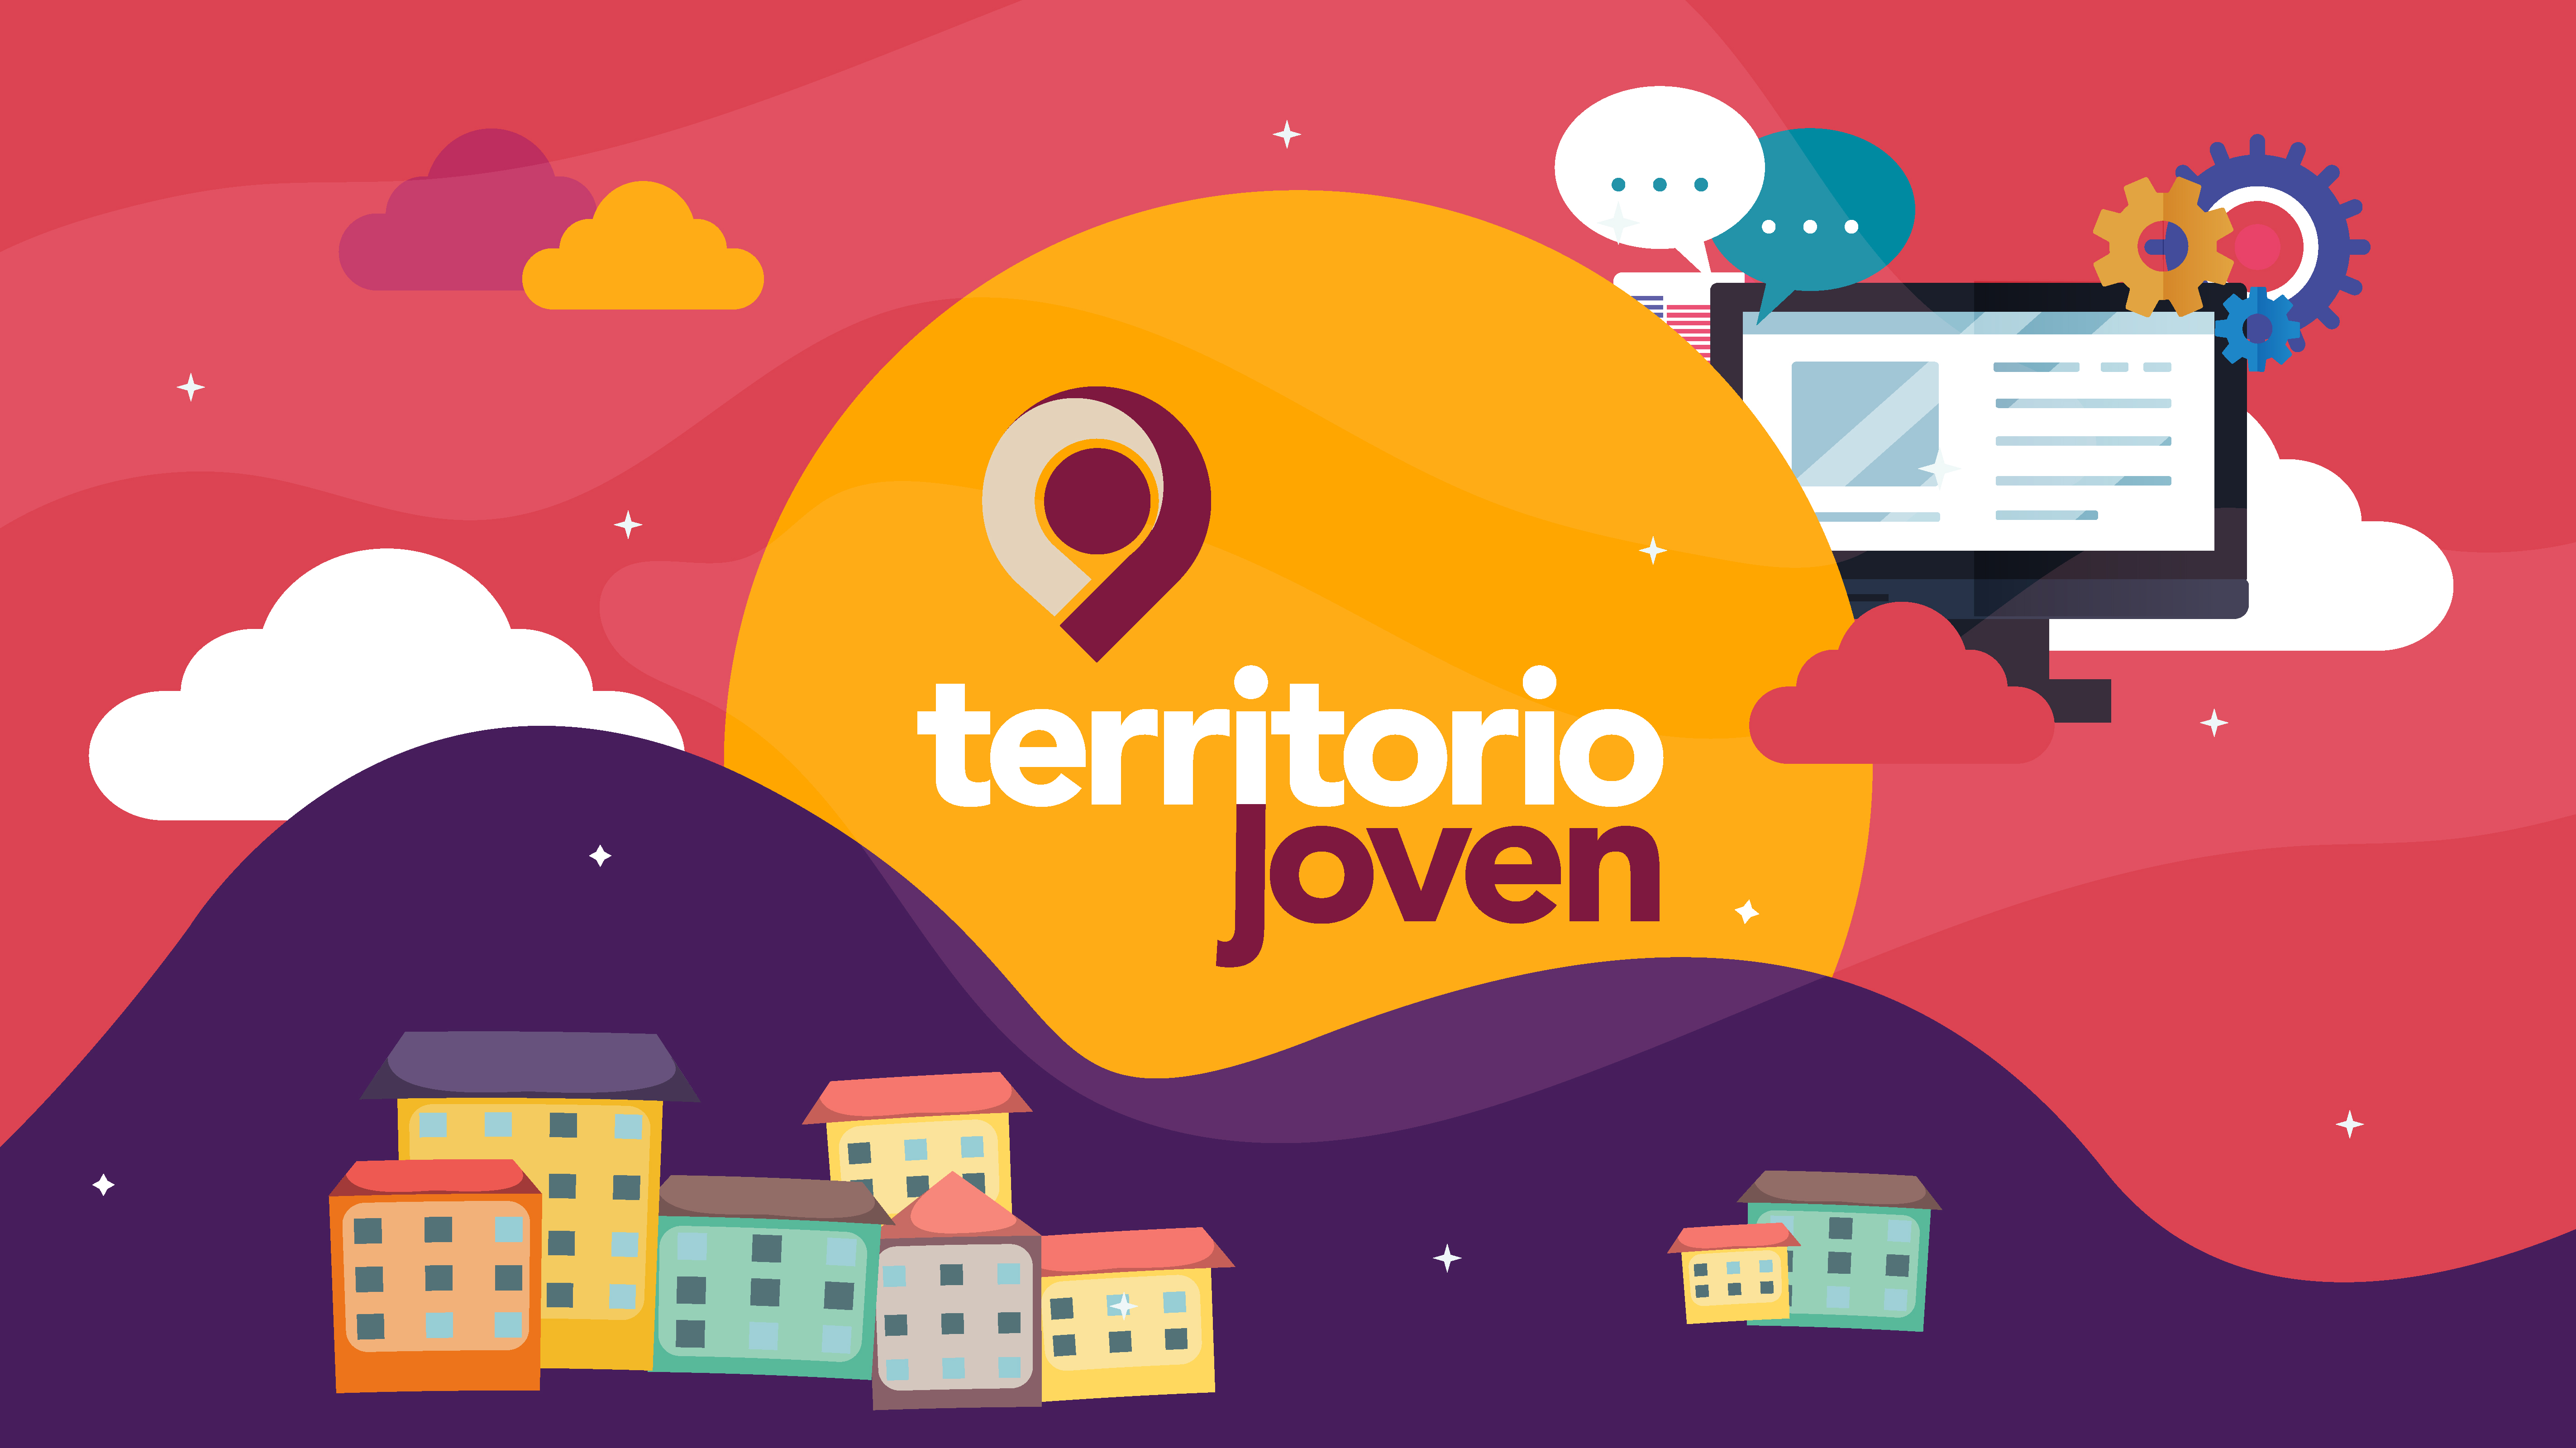 Logotipo e ilustración del programa Centros Territorio Joven, espacios para las y los jóvenes en diversos puntos de México